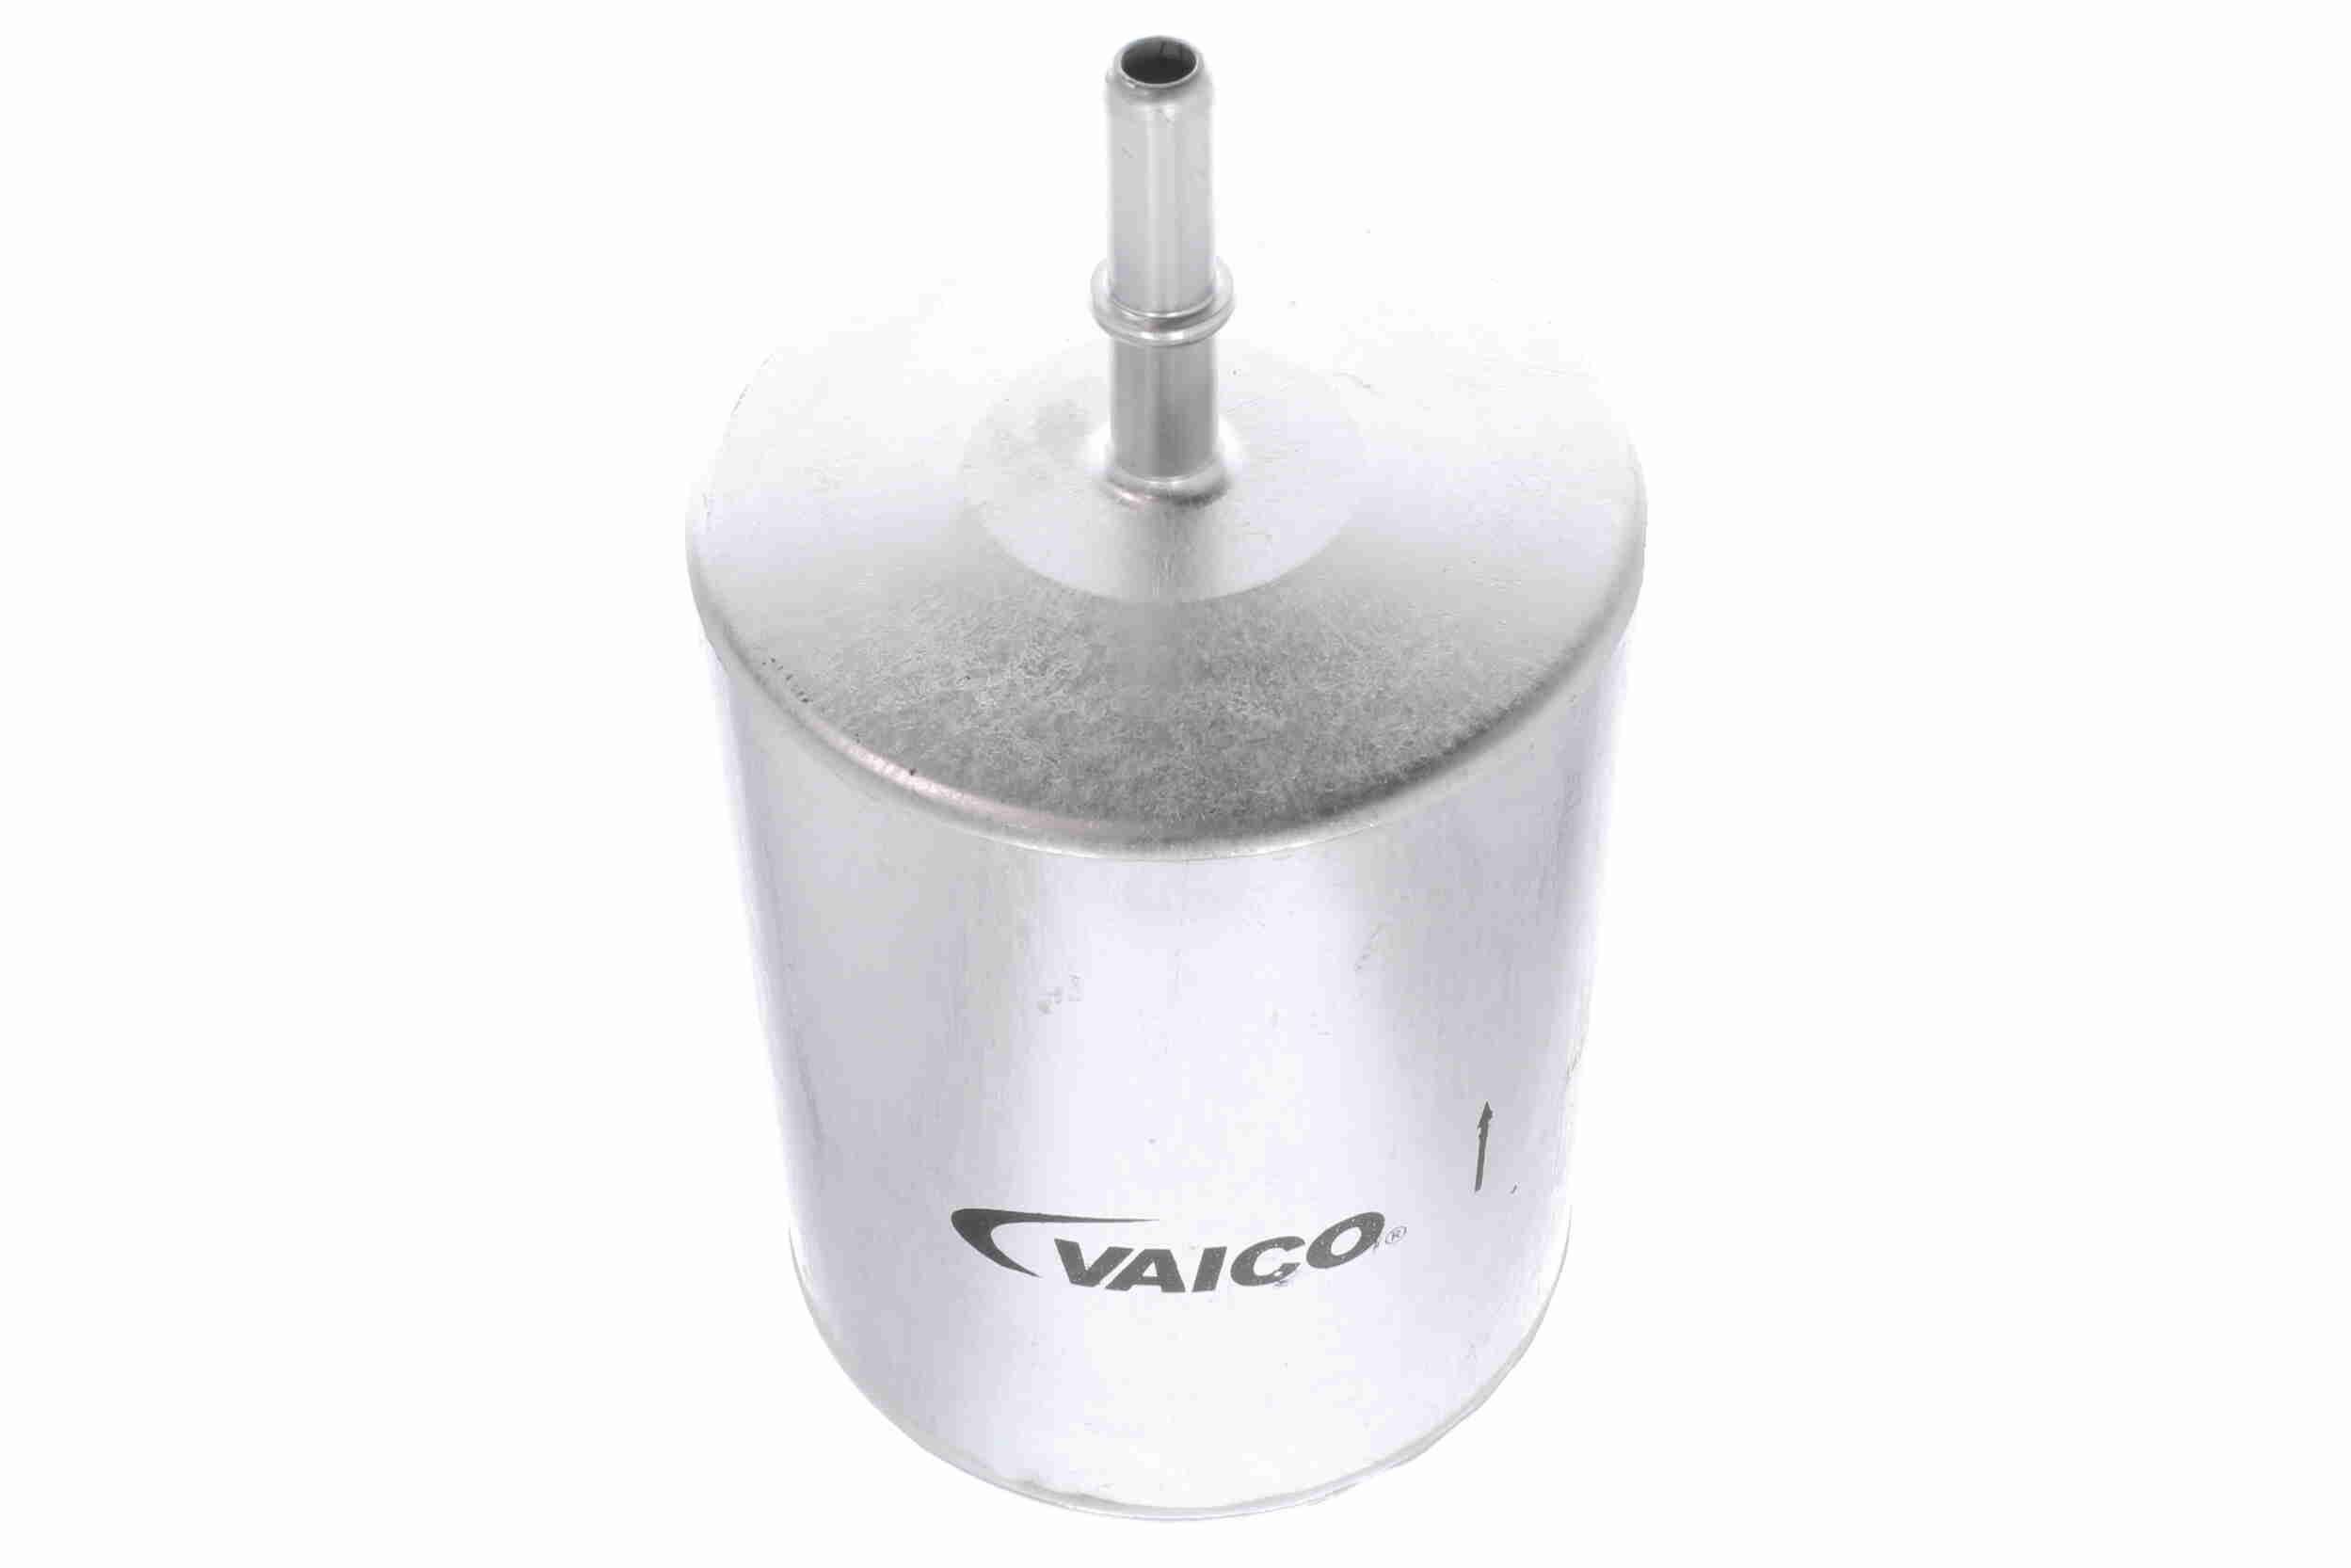 VAICO V25-0115 Fuel filter Spin-on Filter, Petrol, 8mm, 8mm, Original VAICO Quality